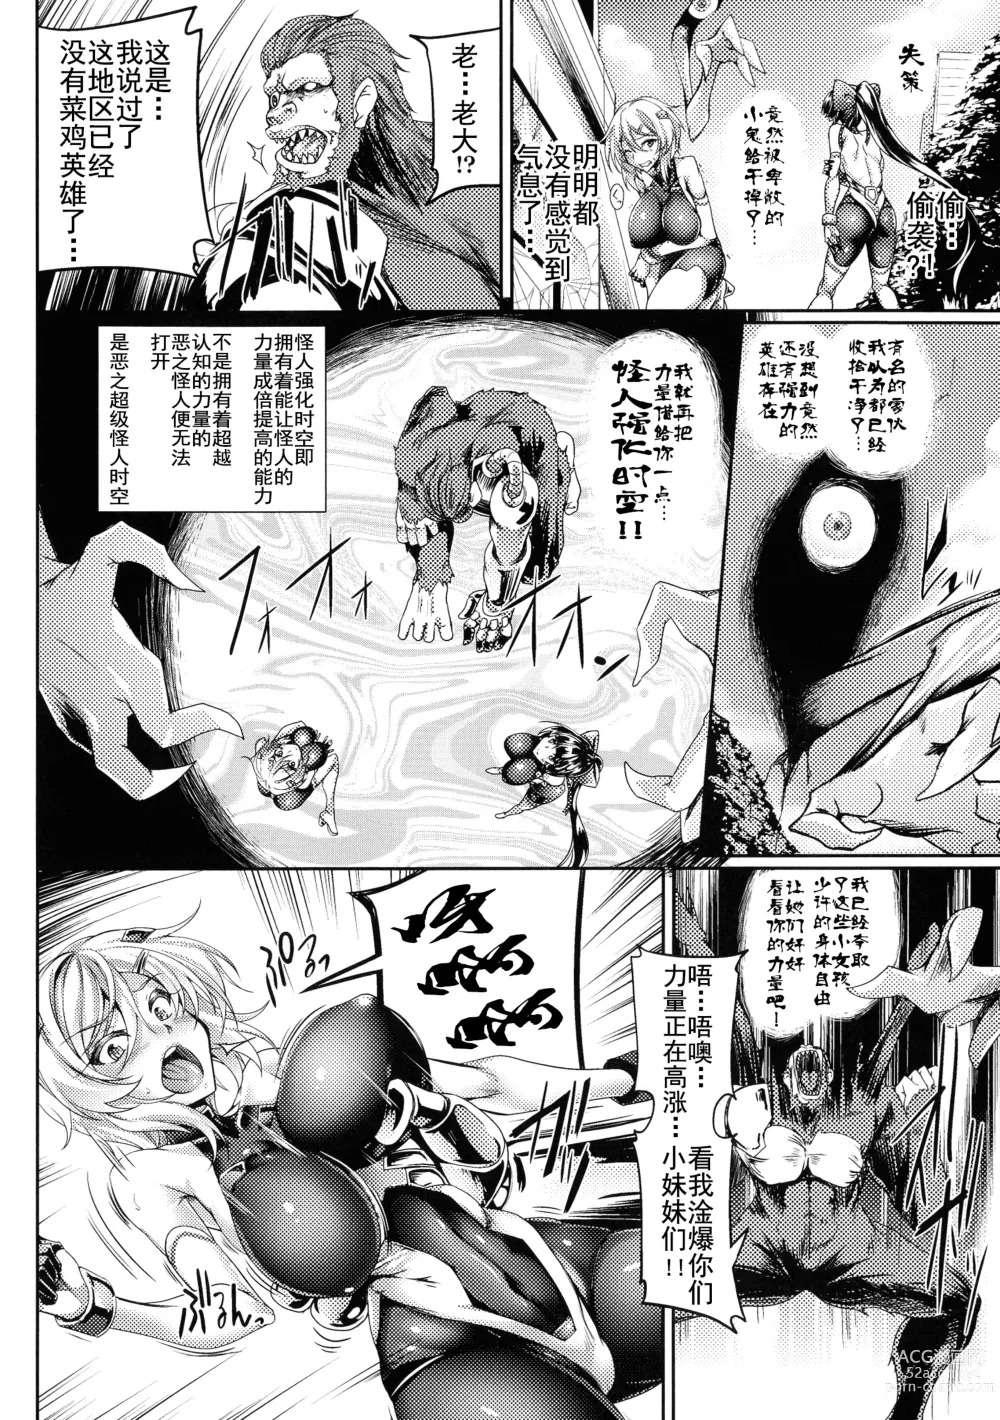 Page 6 of manga Soukou Shinsei Twinkle Twins